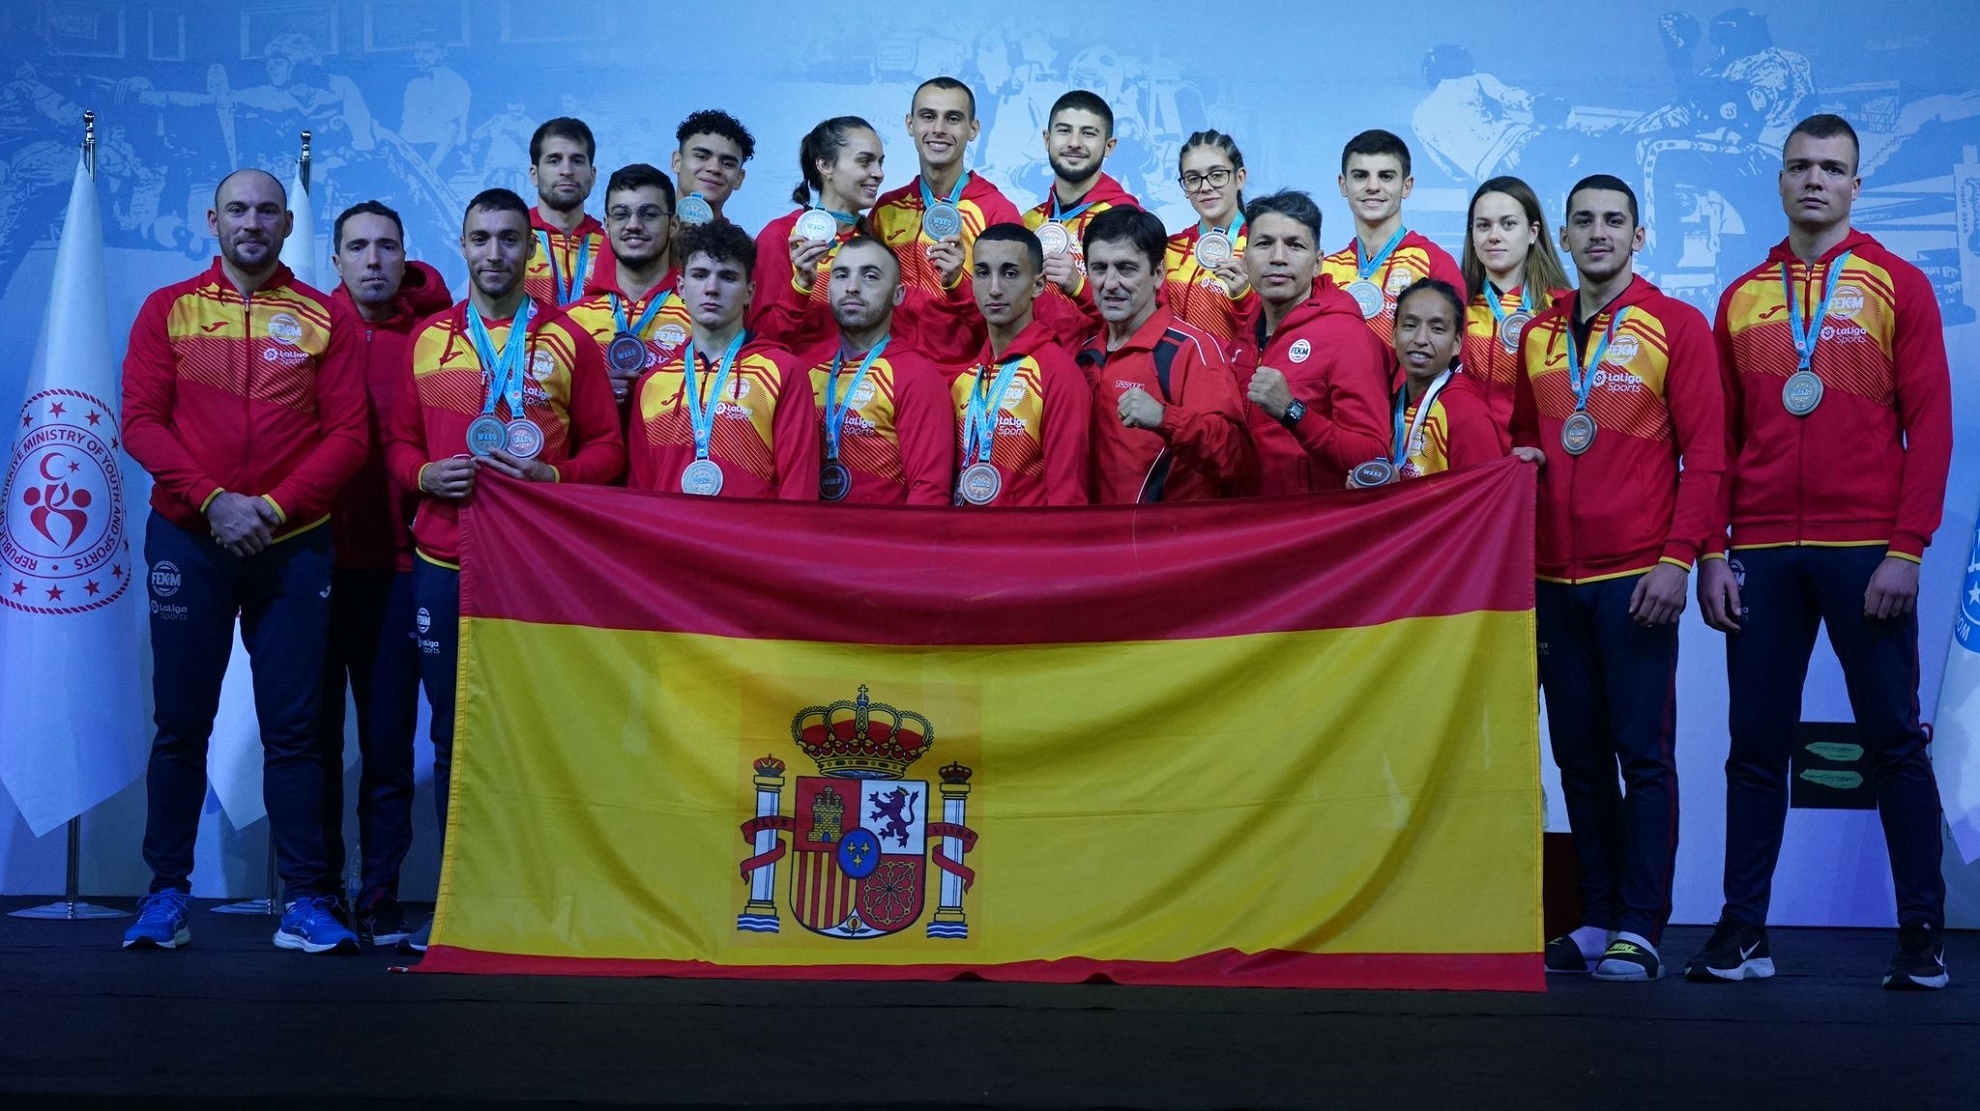 Gran actuación del equipo español en los Campeonatos de Europa de kickboxing